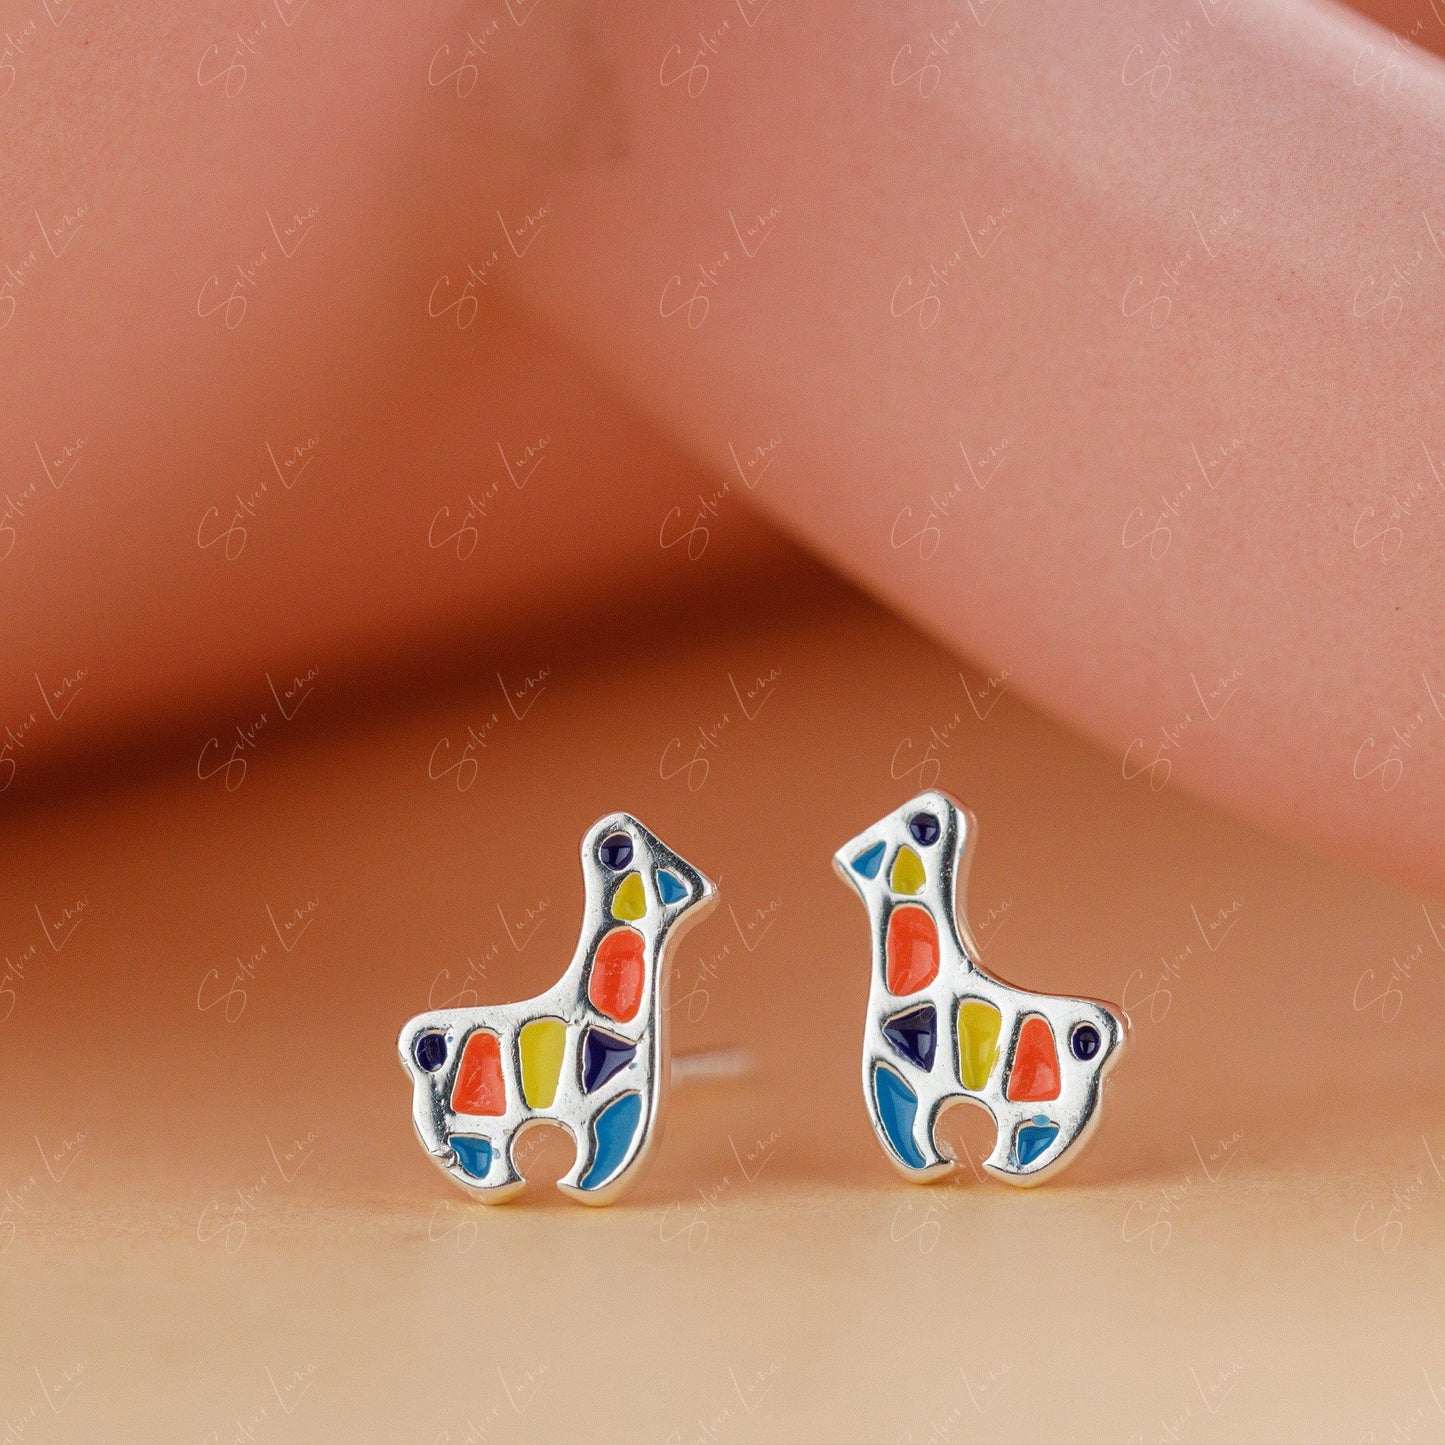 Cute Mosaic Giraffe Stud Animal Earrings